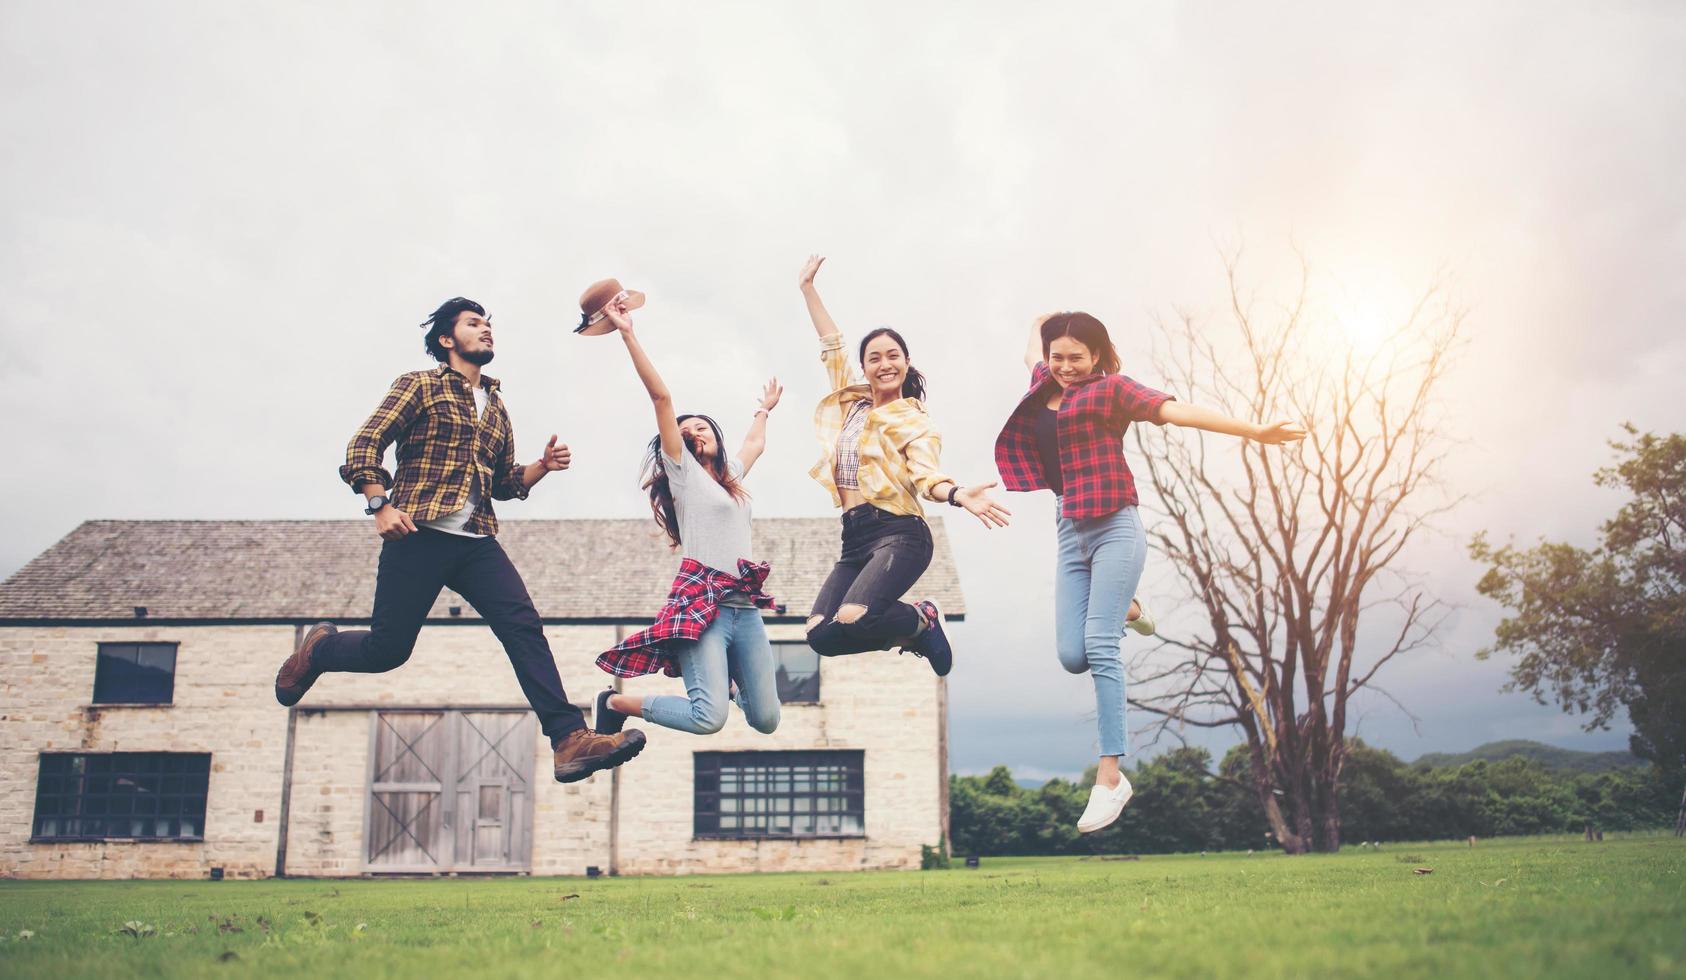 grupo feliz de estudantes adolescentes pulando juntos em um parque foto